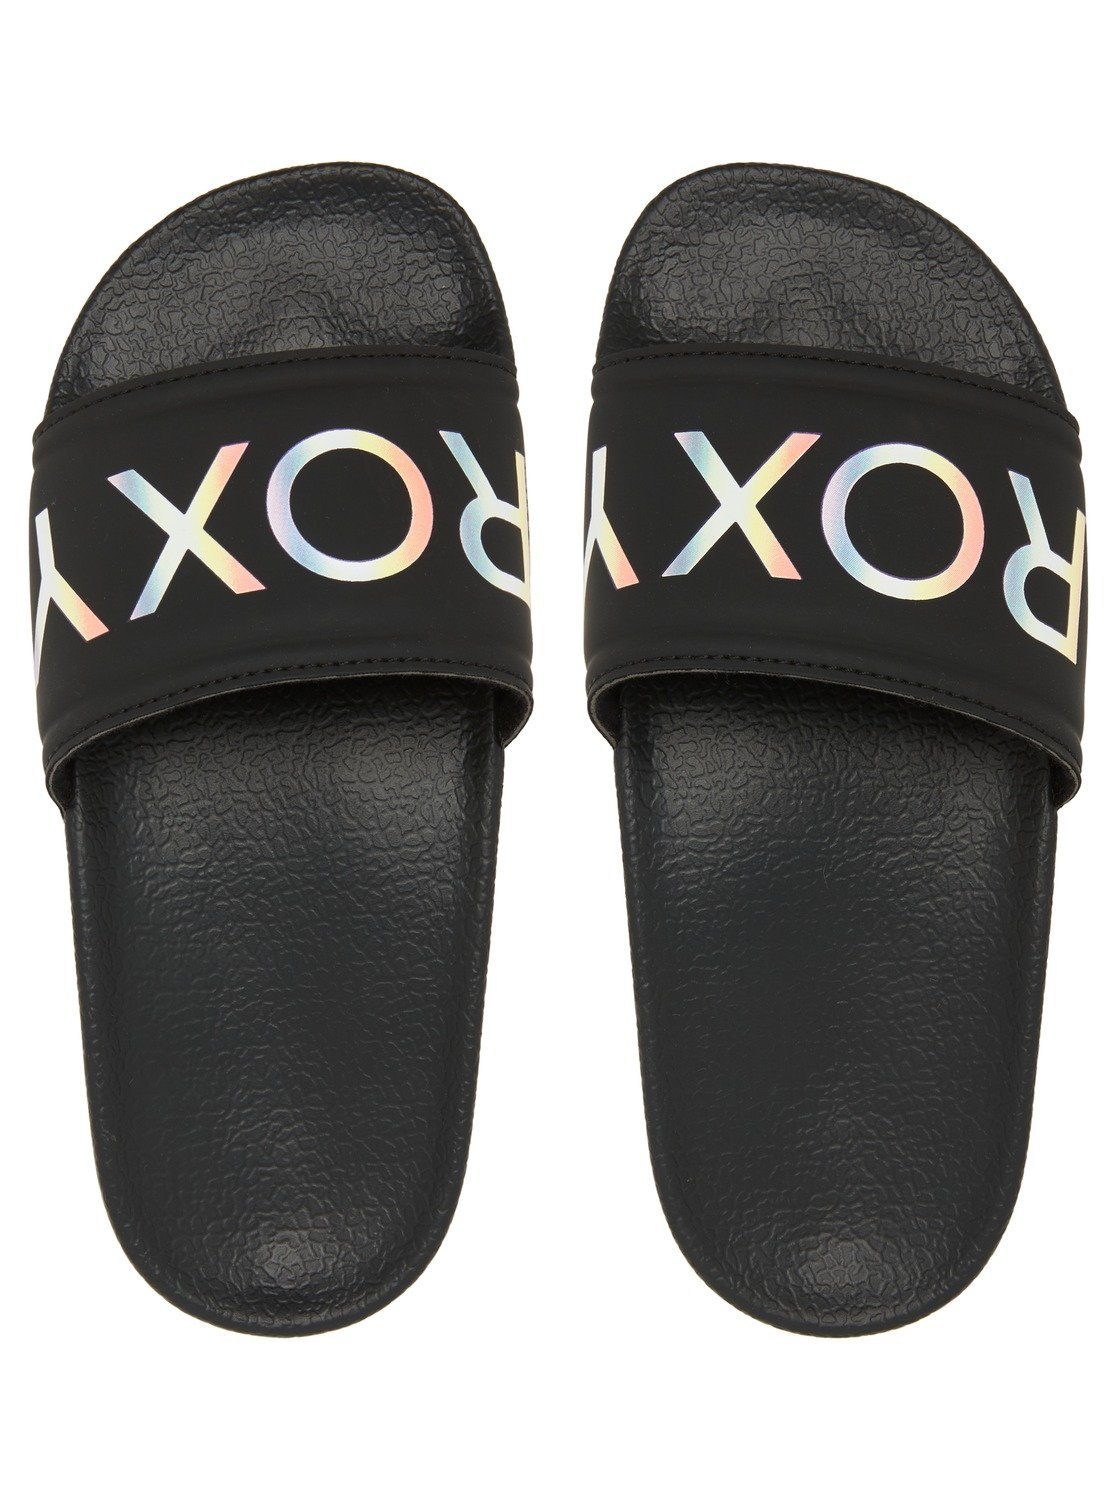 Roxy Slippy Sandale schwarz